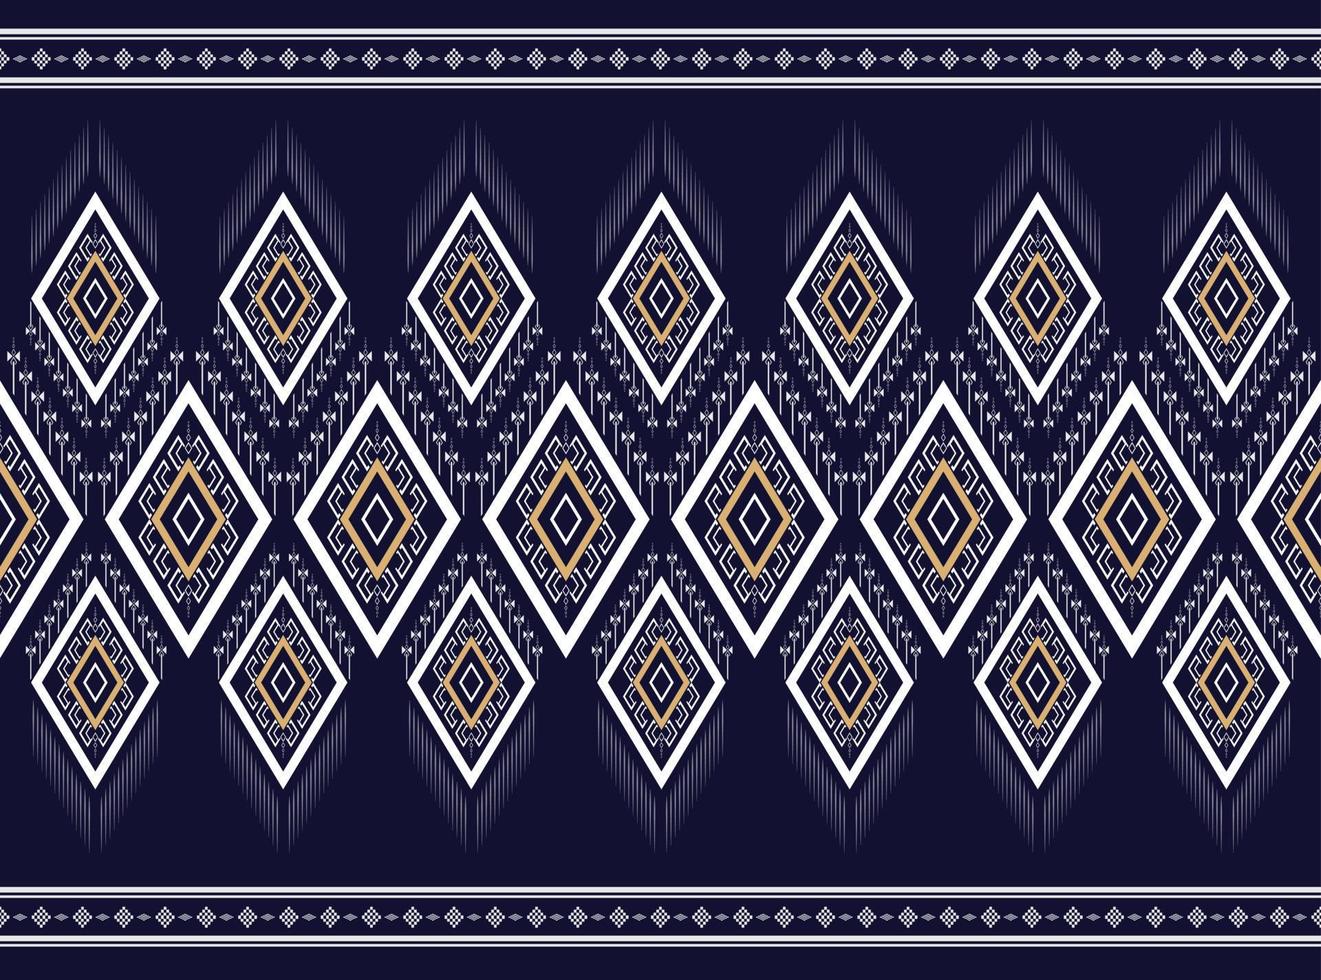 textura tradicional de padrão étnico geométrico preto e branco para saia, tapete, papel de parede, roupas, embrulho, batik, tecido, roupas, moda, folha de fundo branco vetor e bordado de ilustração